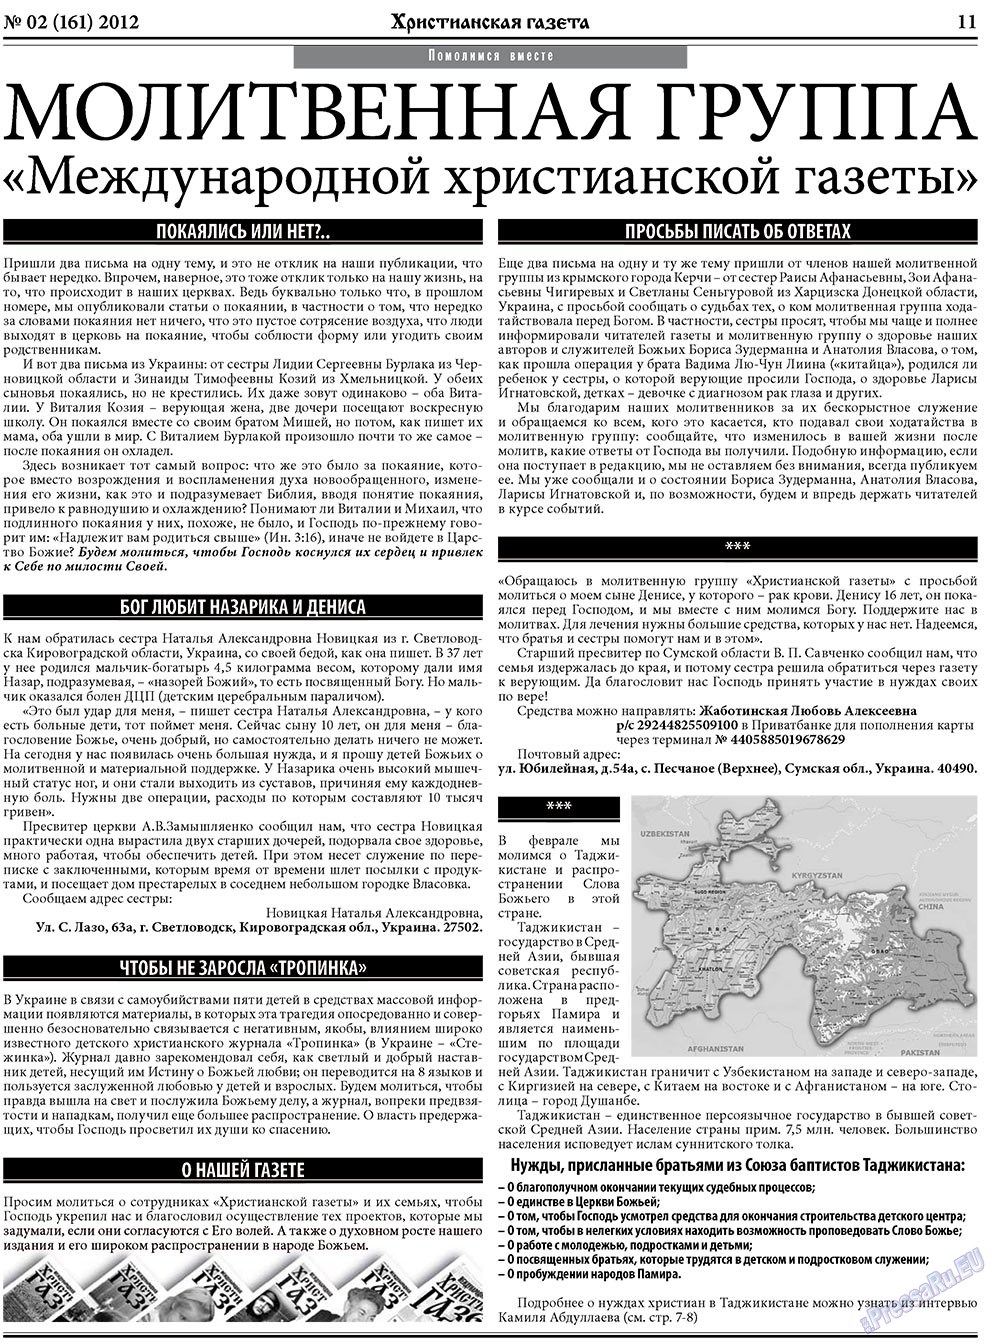 Христианская газета, газета. 2012 №2 стр.11